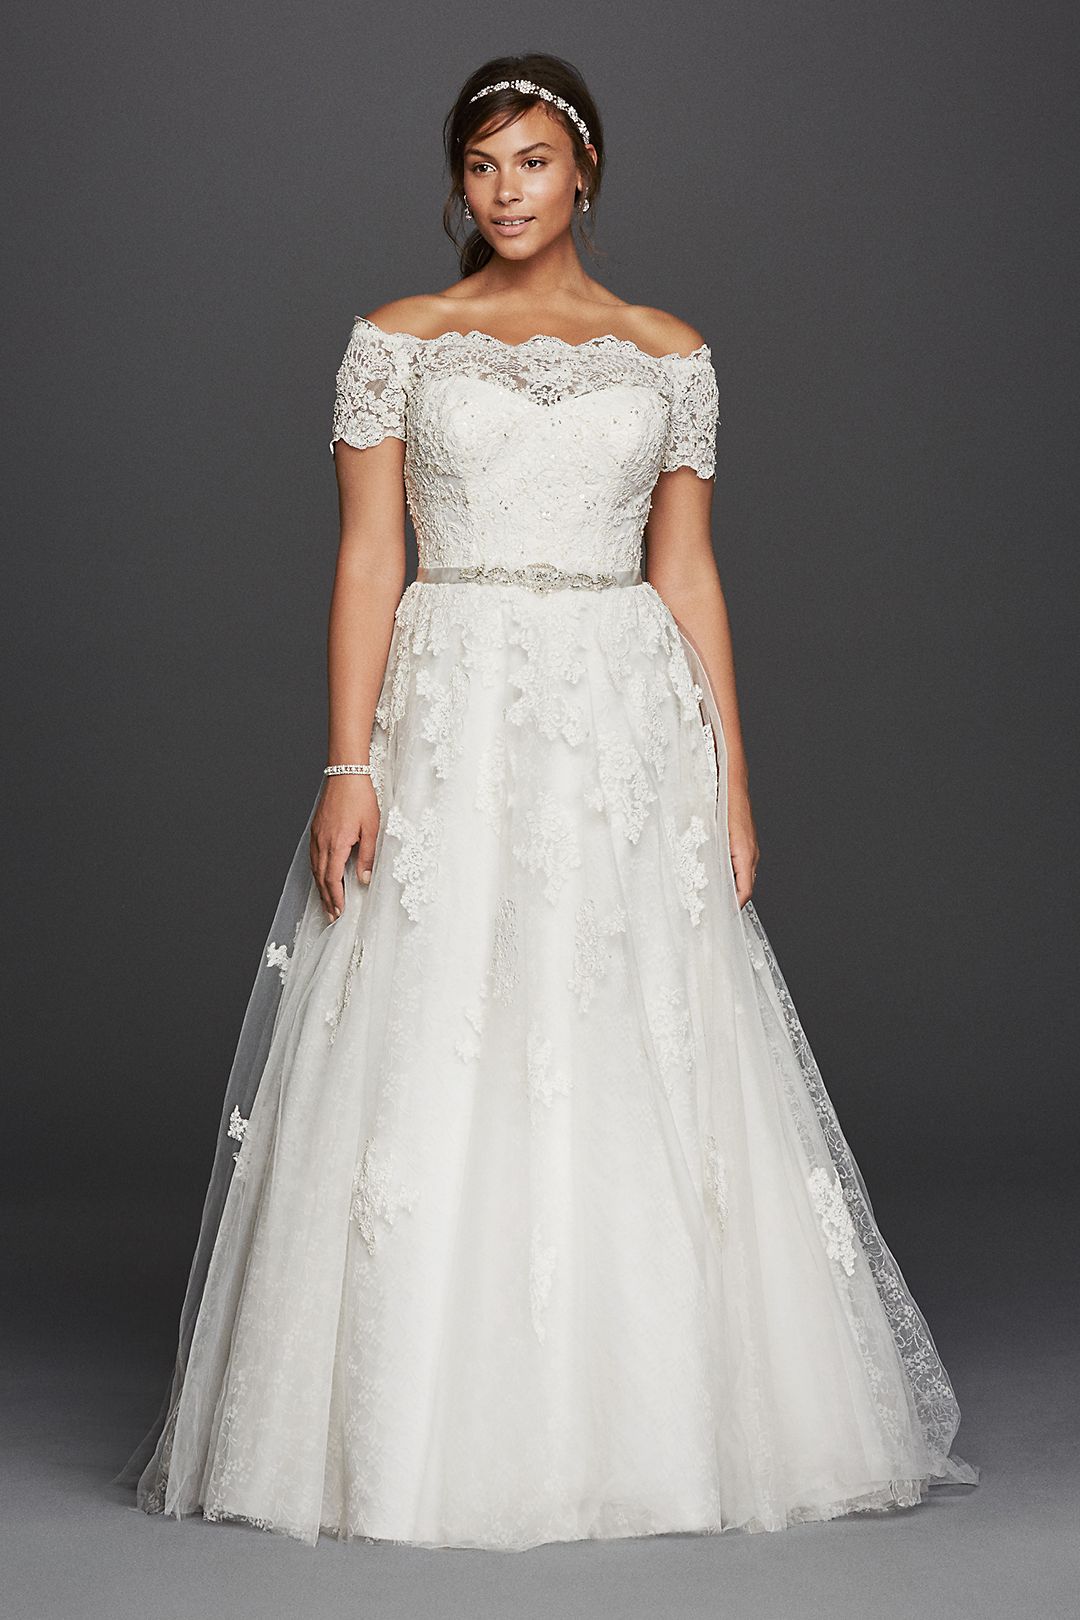 Jewel Short Sleeve Off The Shoulder Wedding Dress Image 1